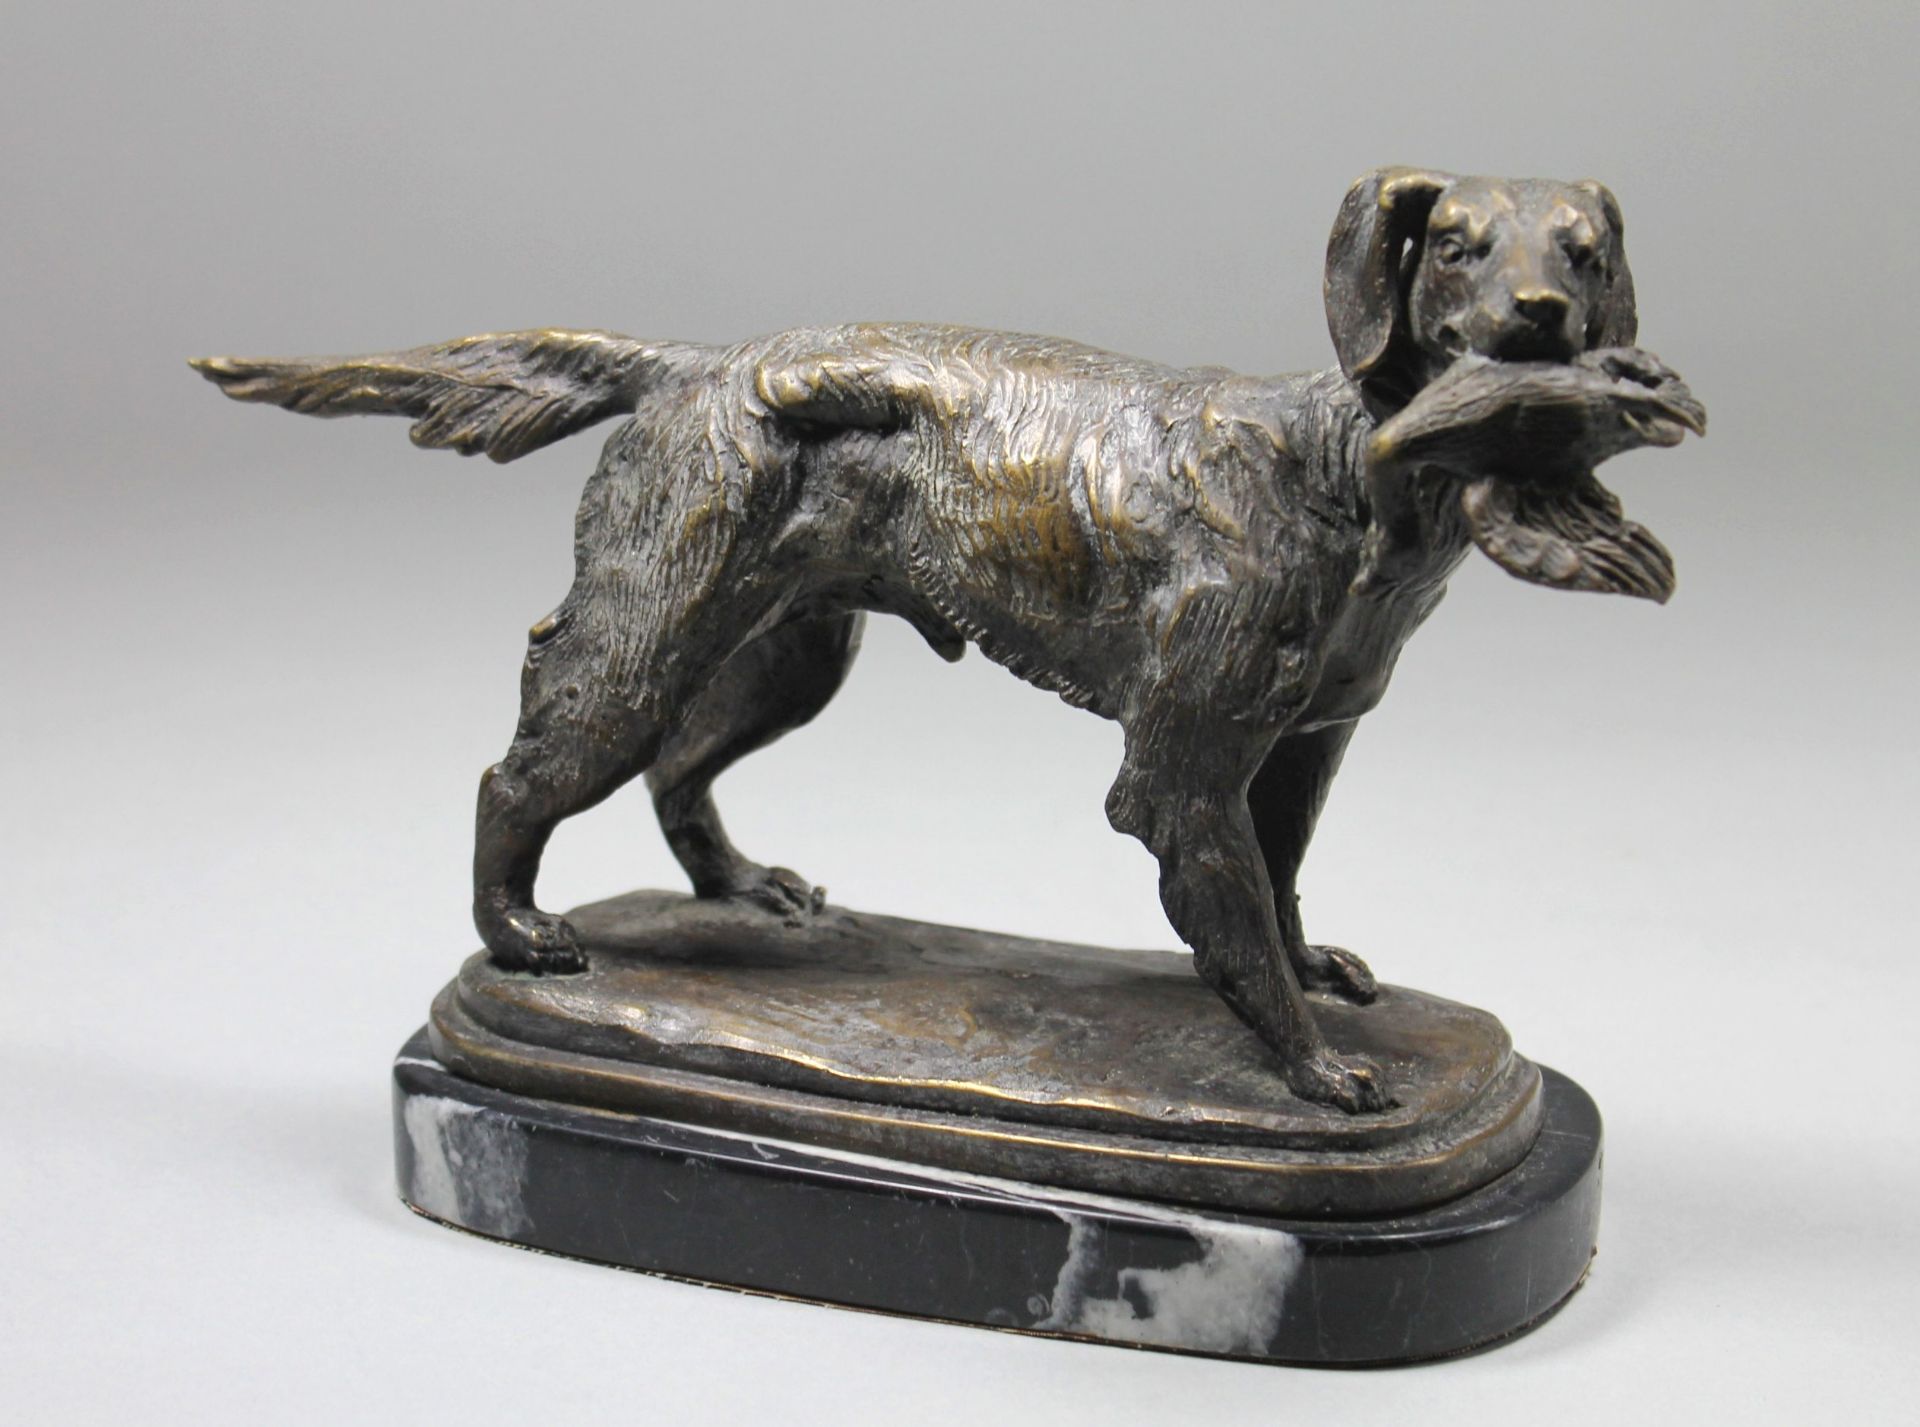 1 Bronzefigur auf Marmorplinthe "Jagdhund mit Beute im Maul", keine Signatur erkennbar, ca. 18,5cm x